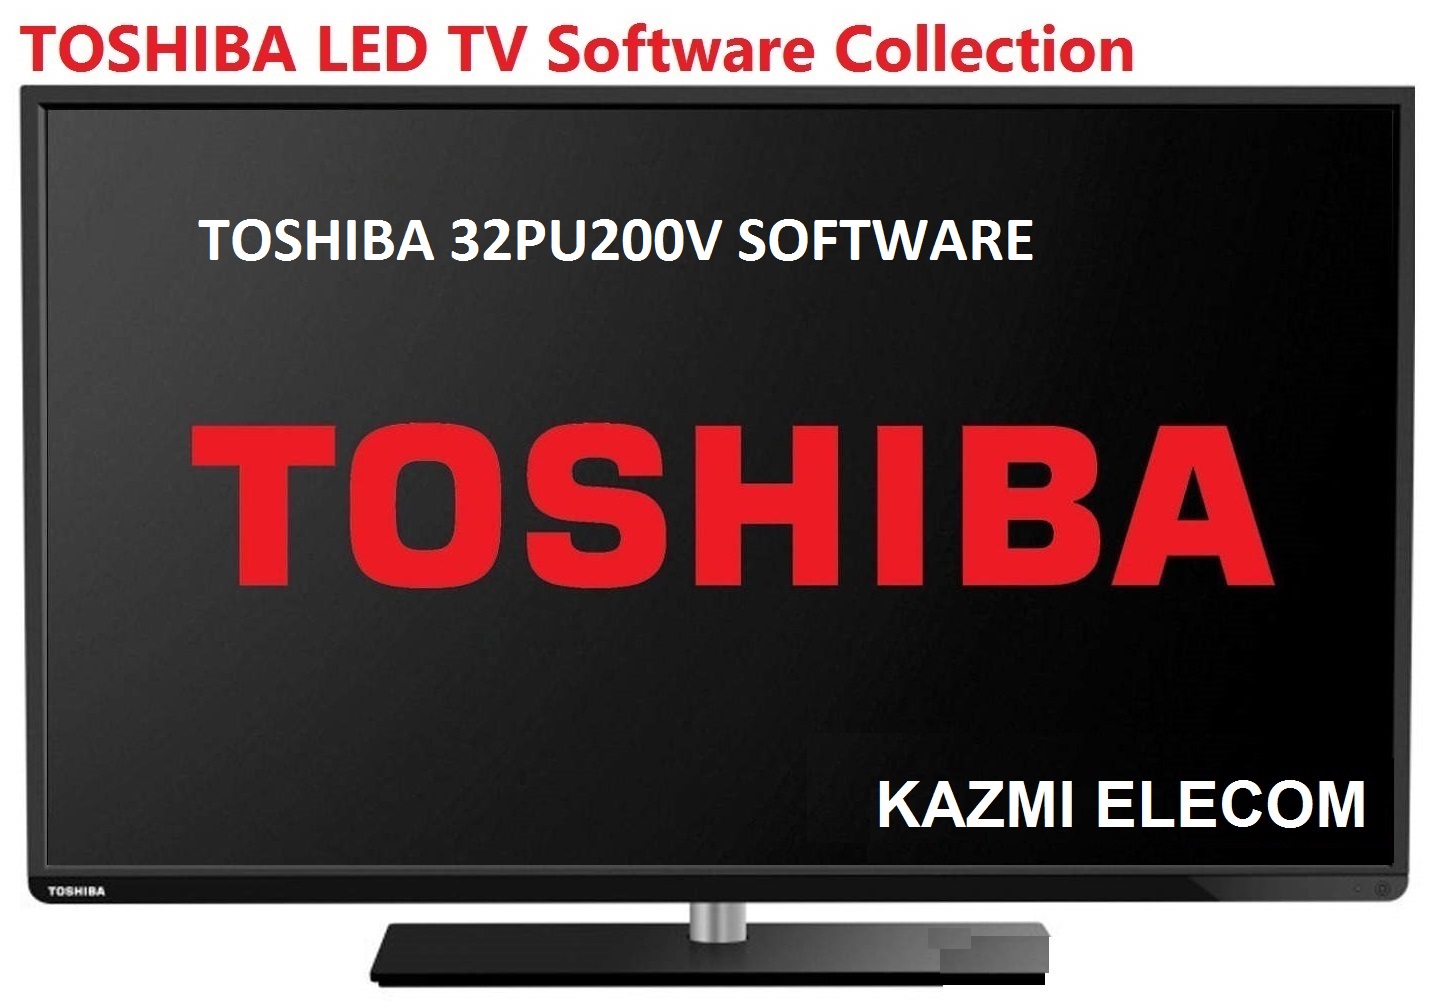 Toshiba 32Pu200V